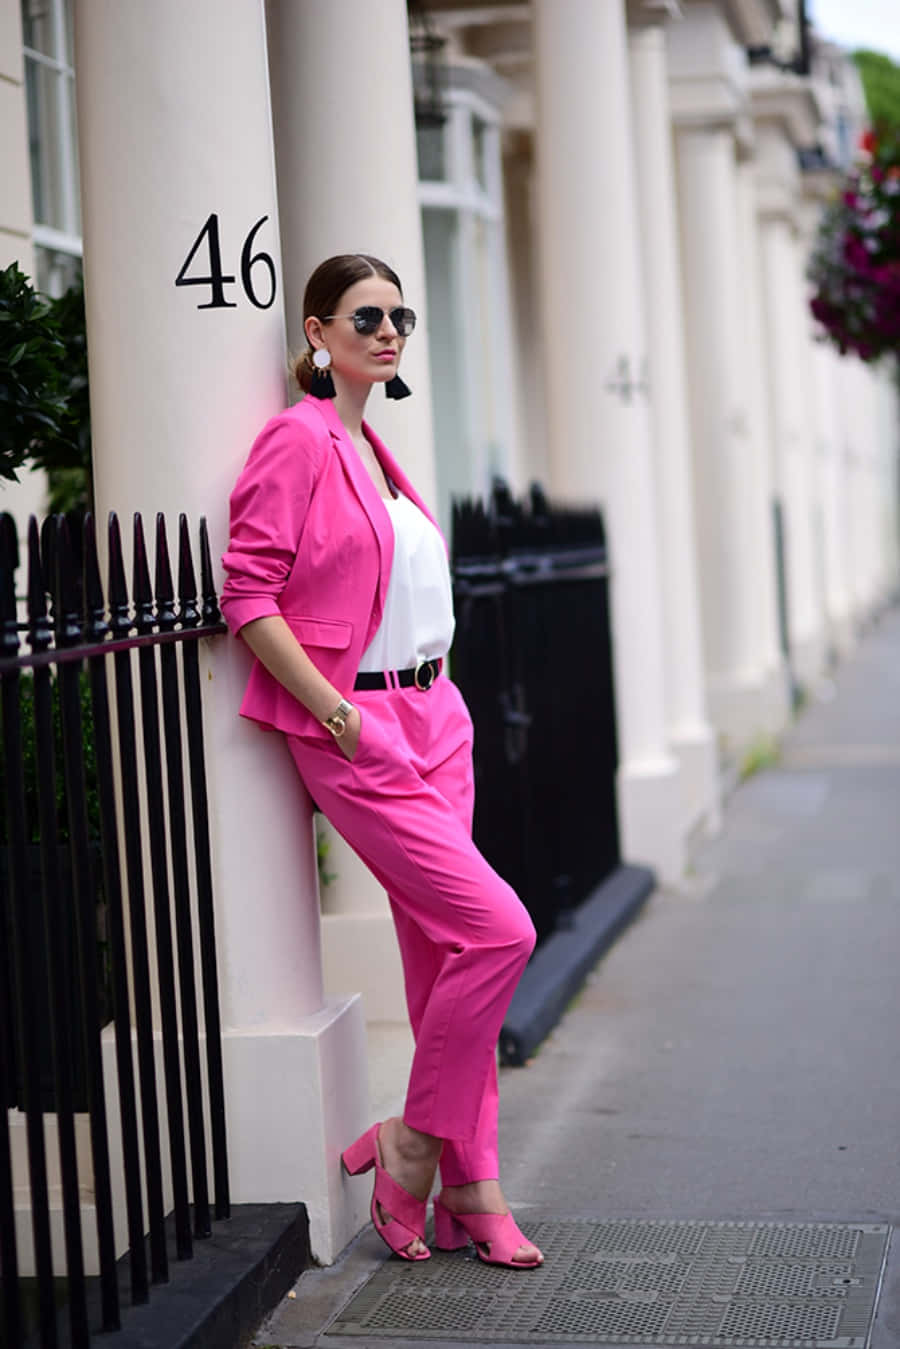 Elegant Pink Fashion Aesthetic Wallpaper